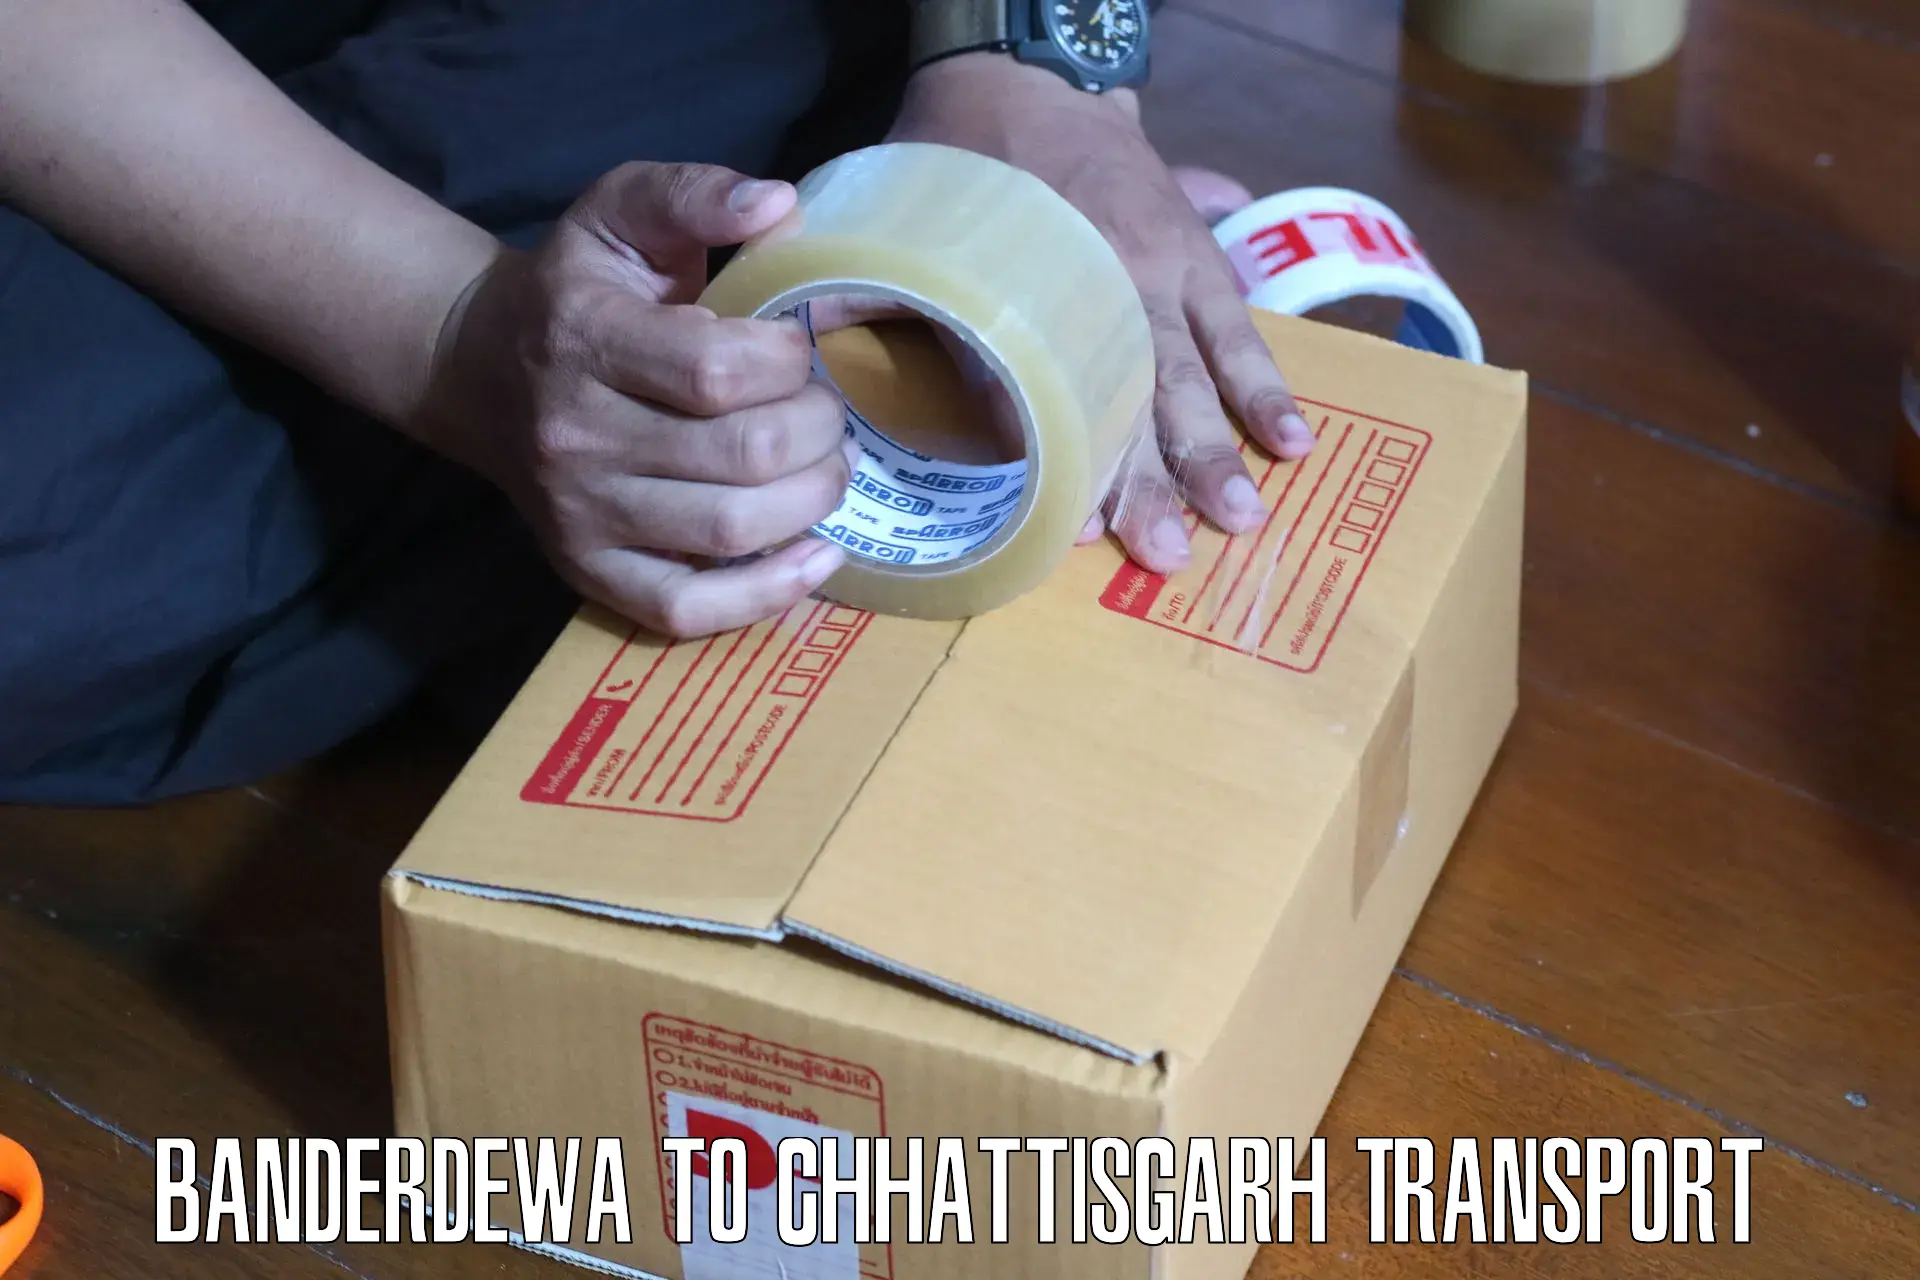 Goods delivery service Banderdewa to Chhattisgarh